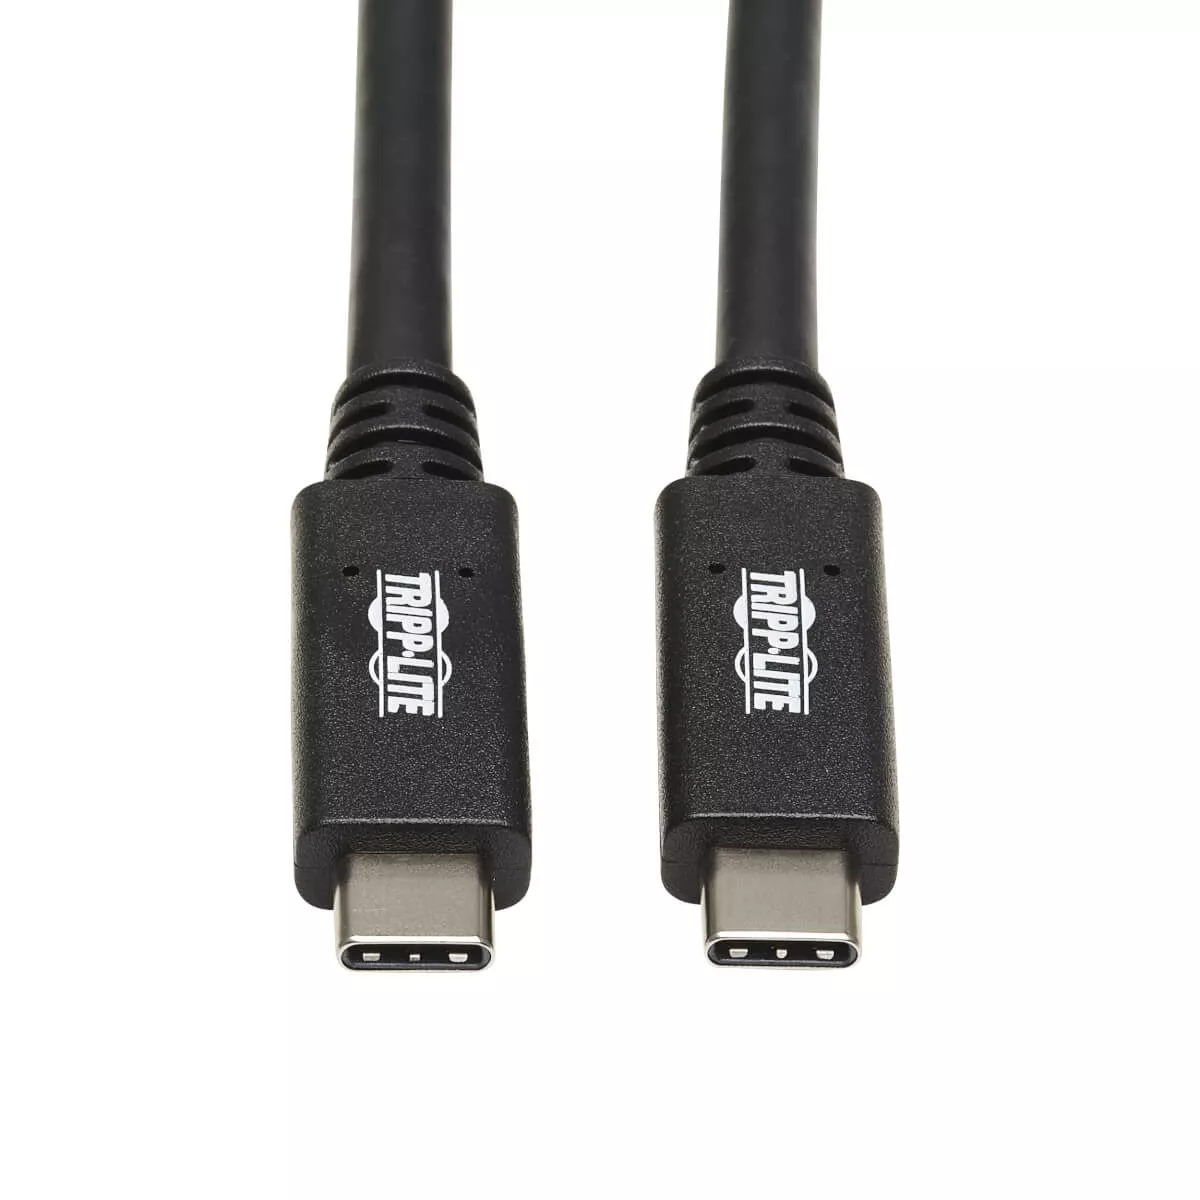 Vente Câble USB EATON TRIPPLITE USB-C Cable M/M - USB 3.1 Gen 2 10 sur hello RSE